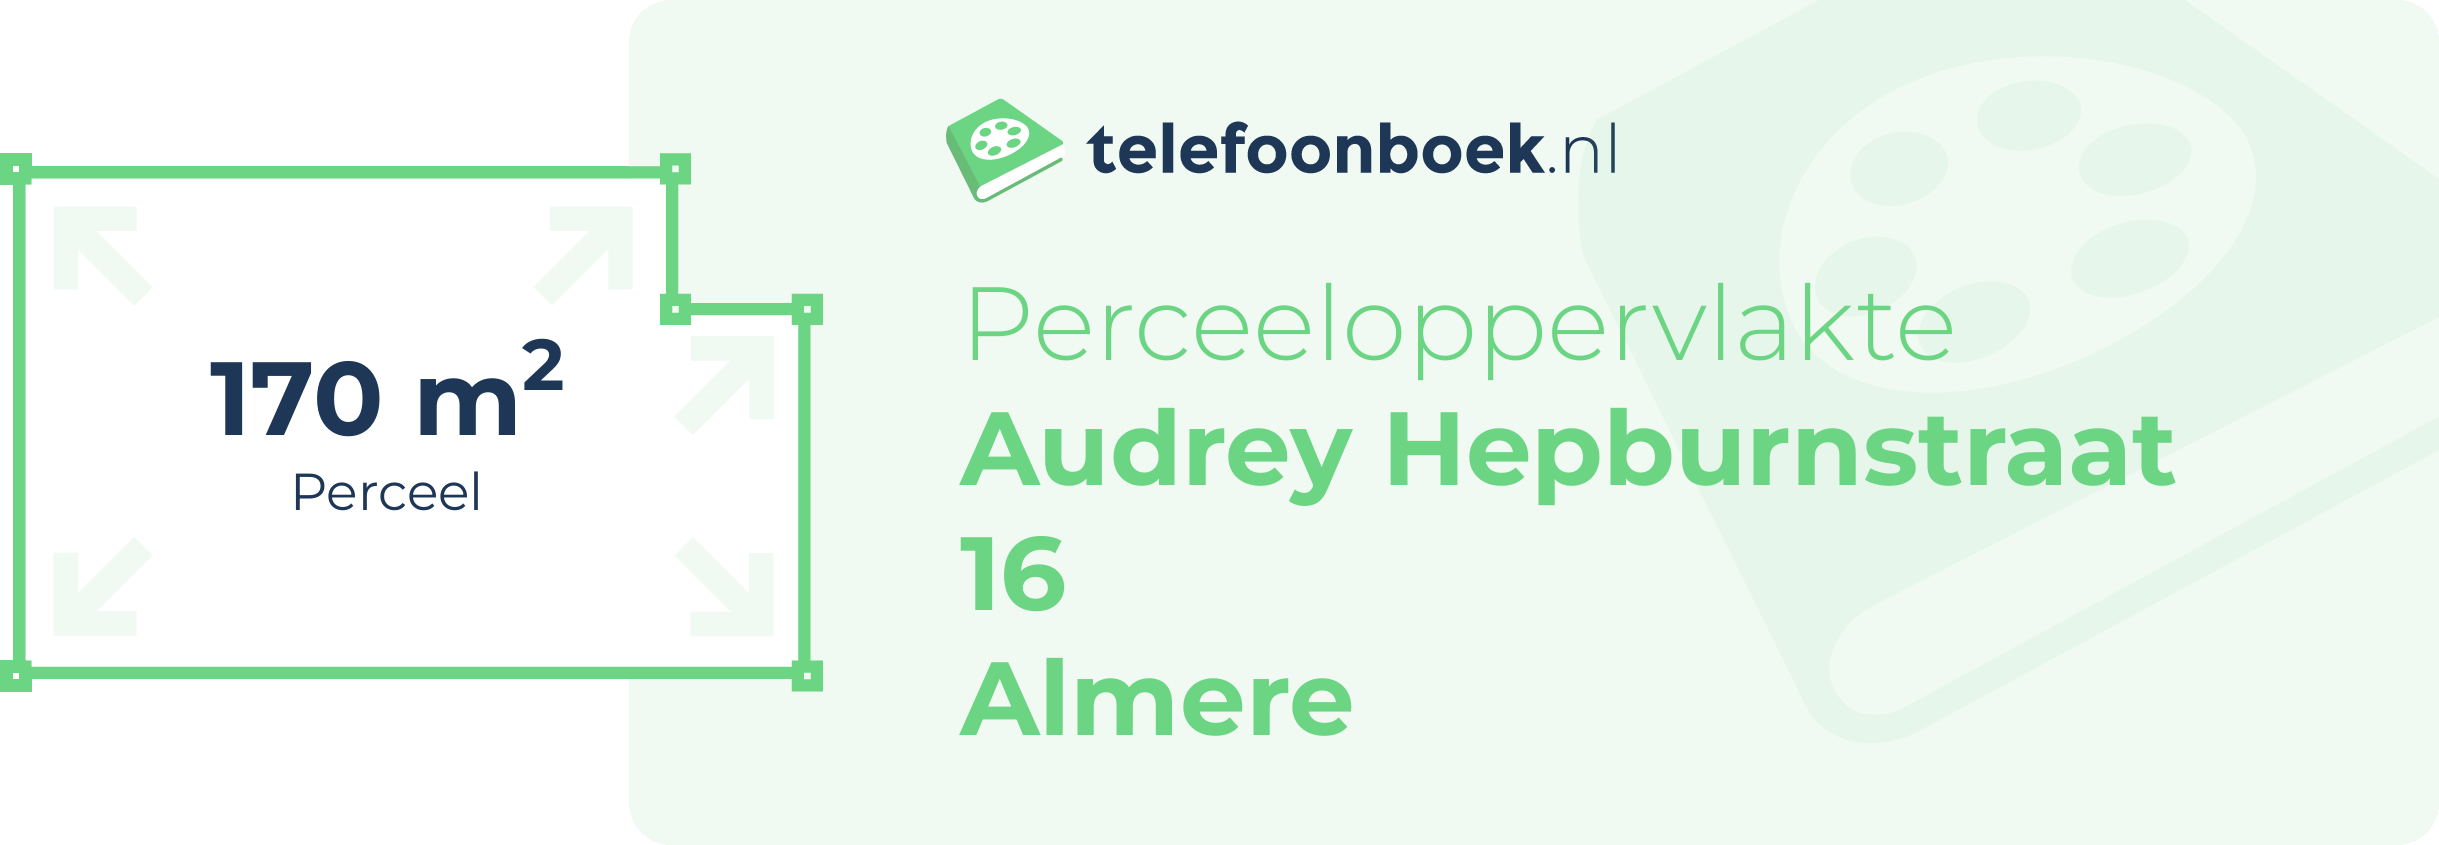 Perceeloppervlakte Audrey Hepburnstraat 16 Almere